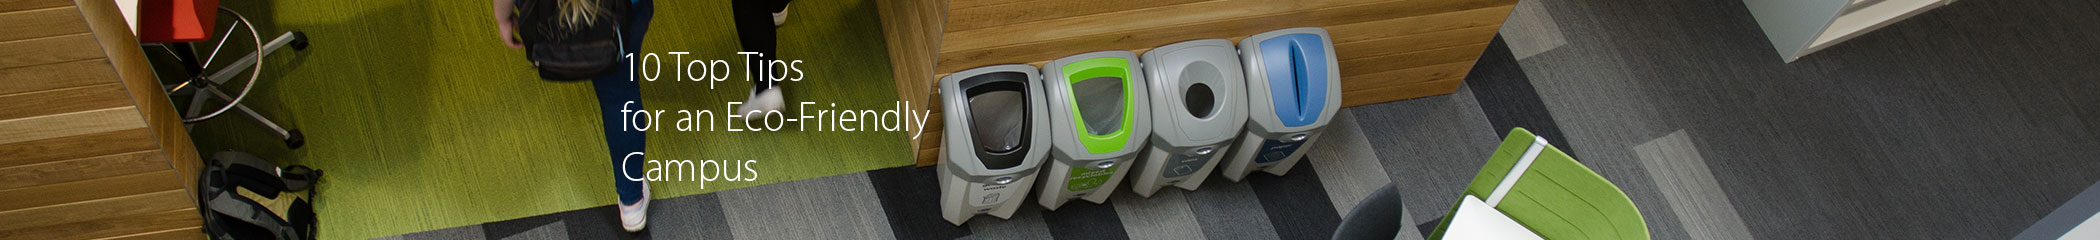 Nexus��200 Recycling Bins